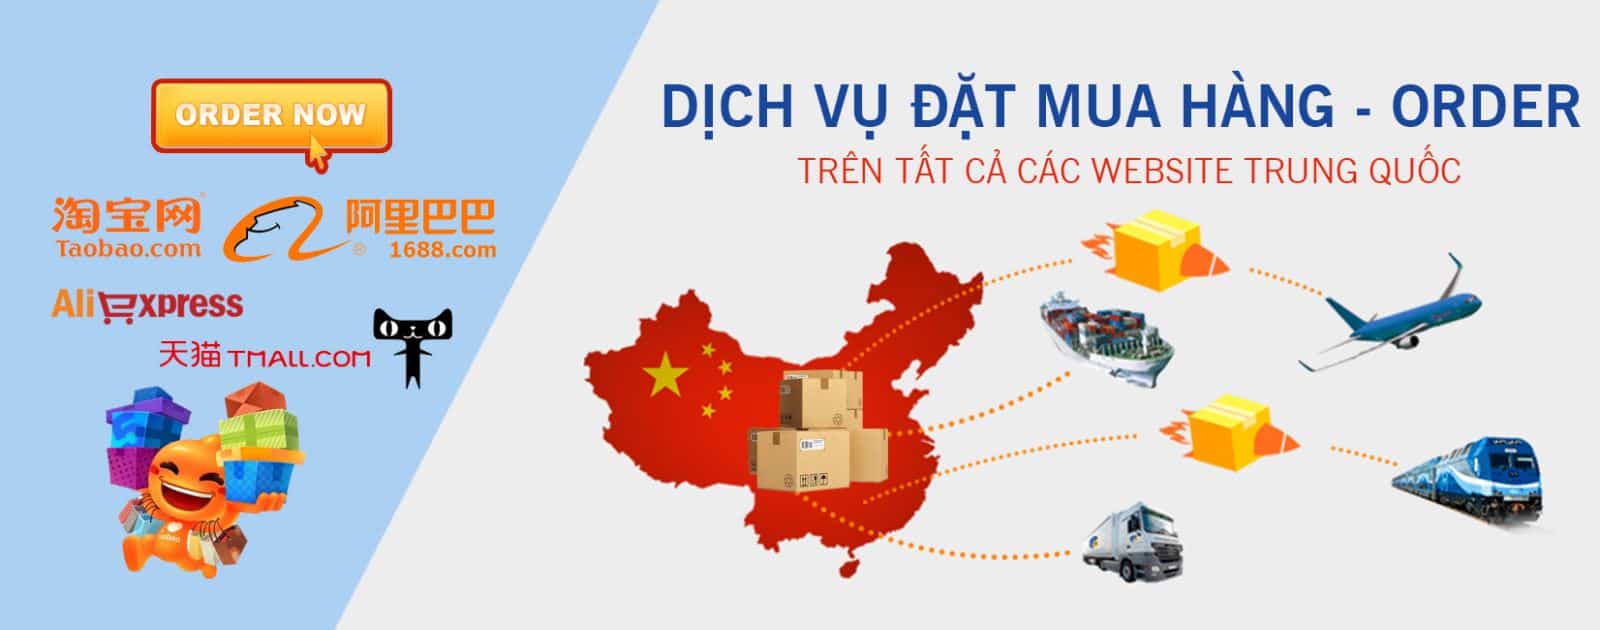 Dịch vụ vận chuyển hàng Trung Quốc tại Đà Nẵng